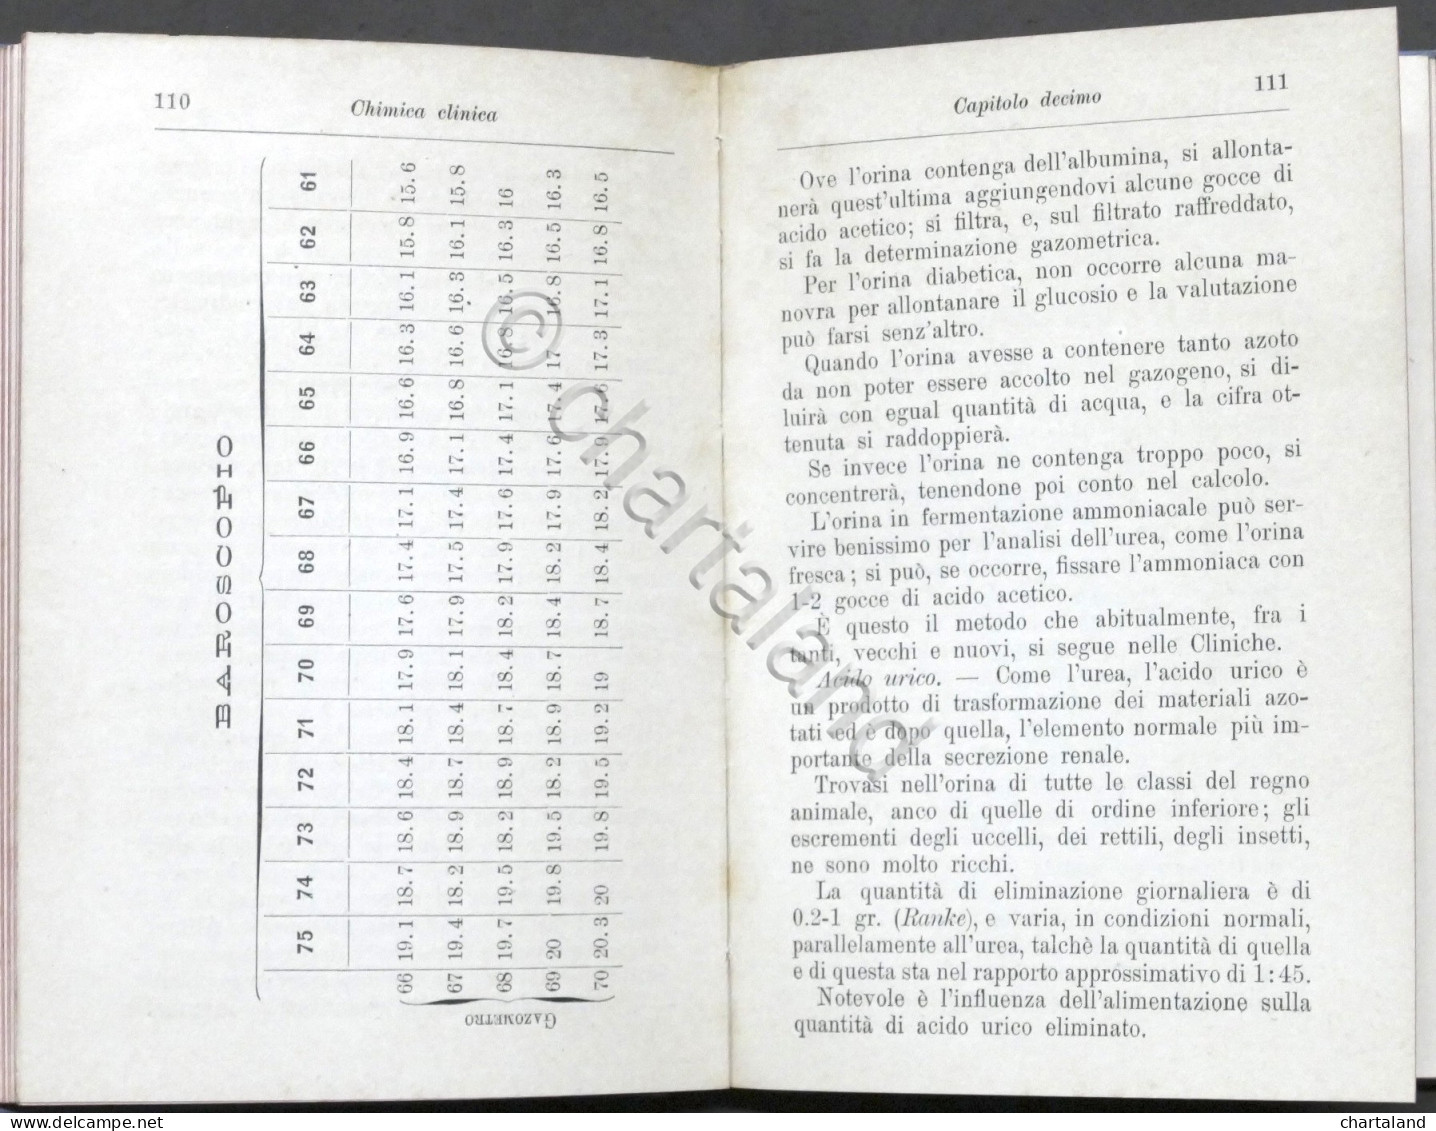 Manuali Hoepli - Dott. Raffaele Supino - Chimica Clinica - 1^ Ed. 1902 - Otros & Sin Clasificación